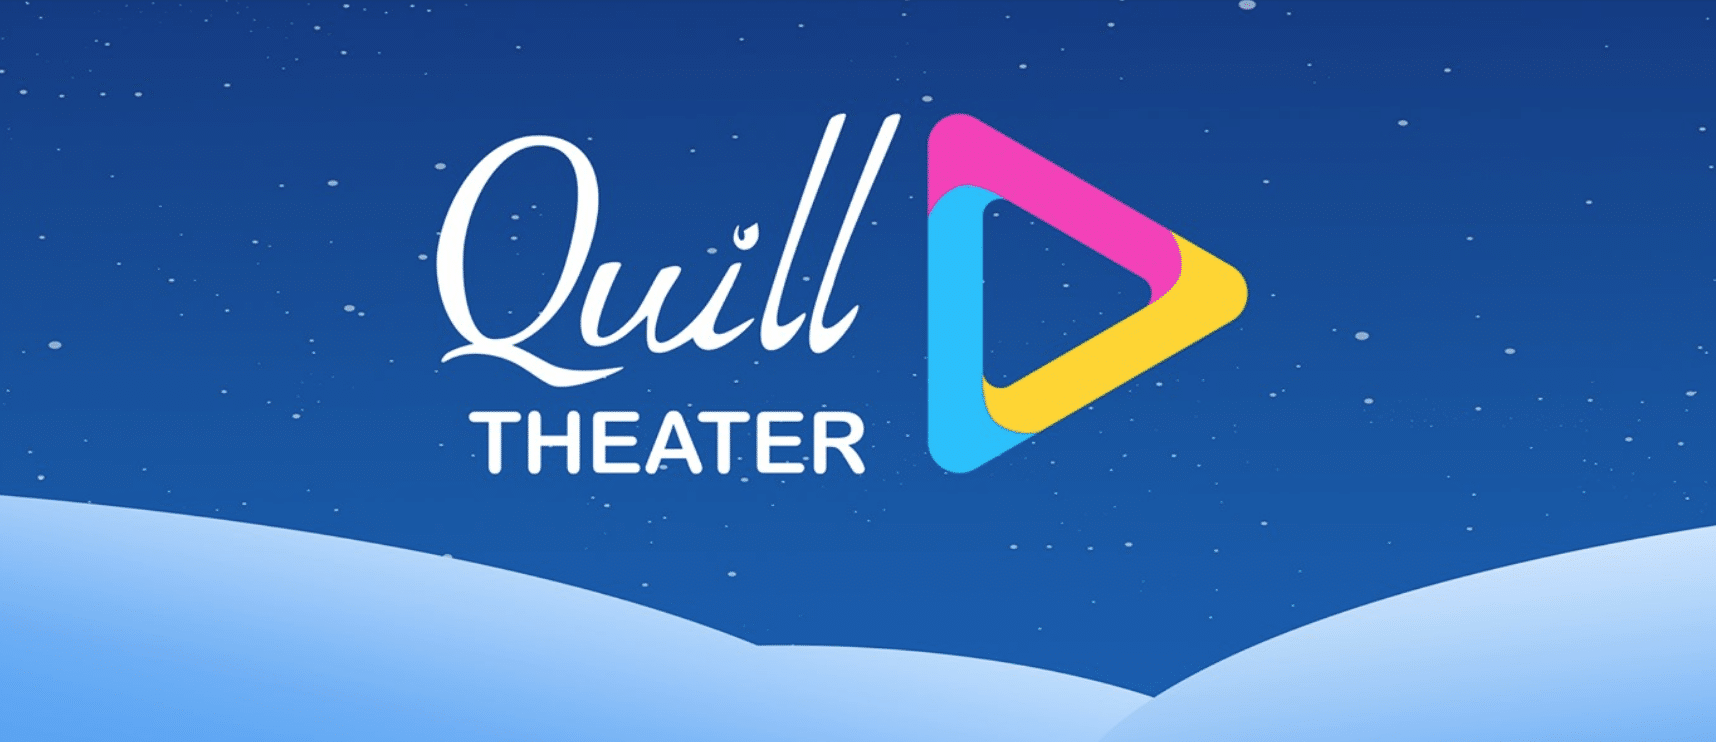 Quill Theatre Квест